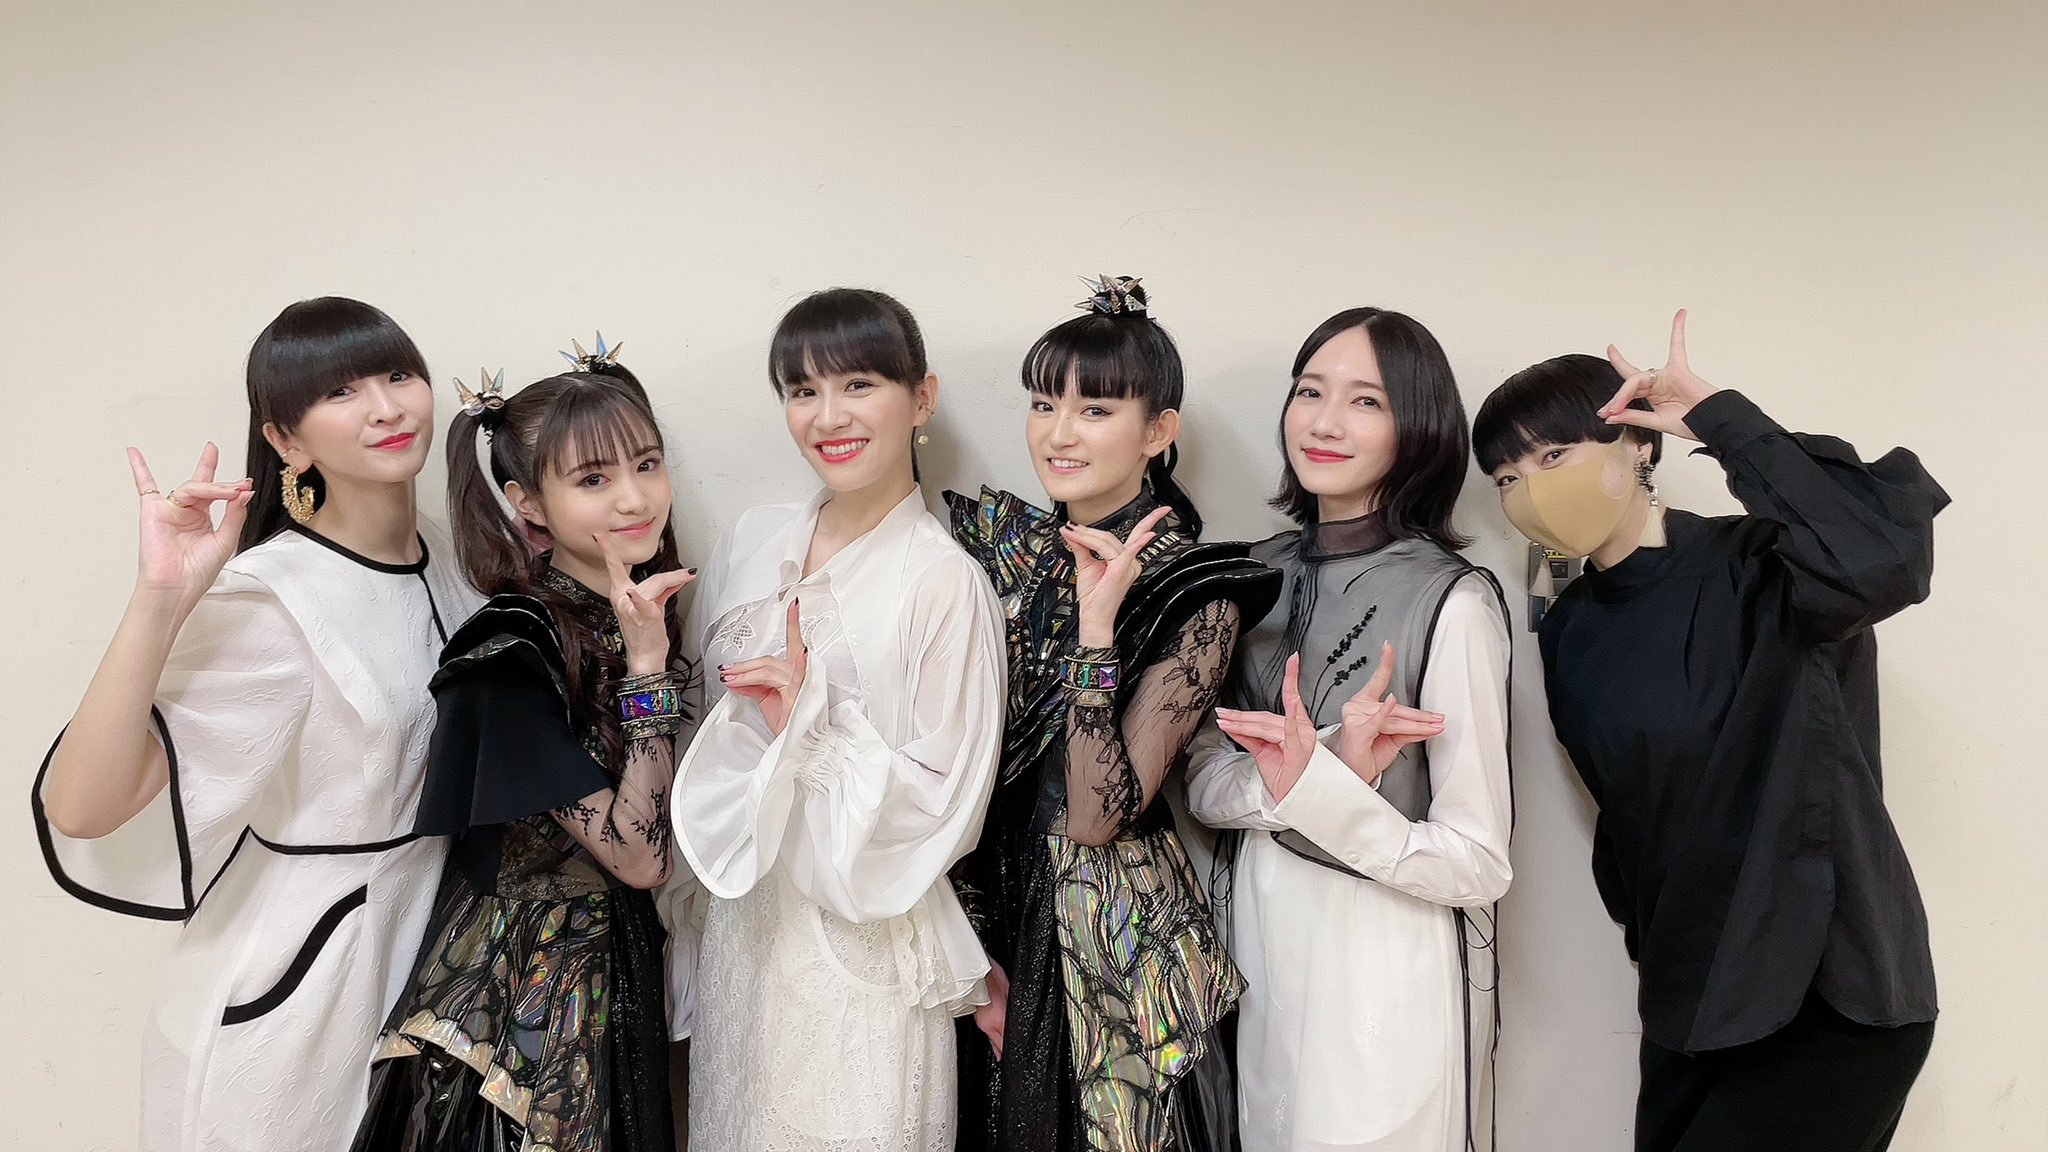 Mikiko with Perfume and BABYMETAL at 2020 Kohaku